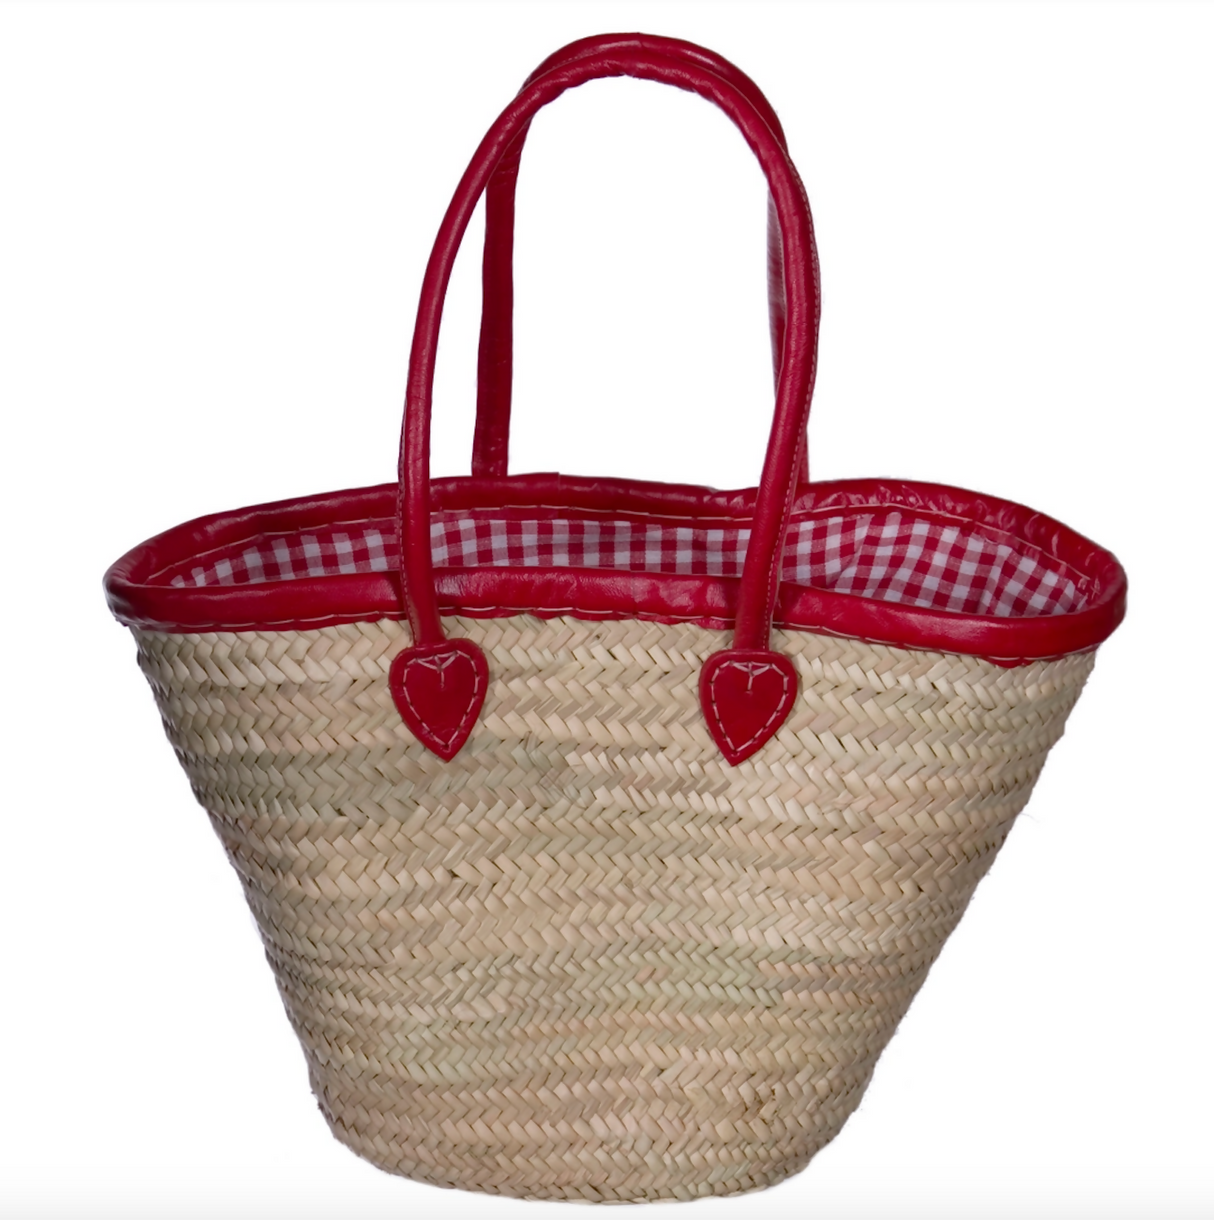 Hand made Market Basket